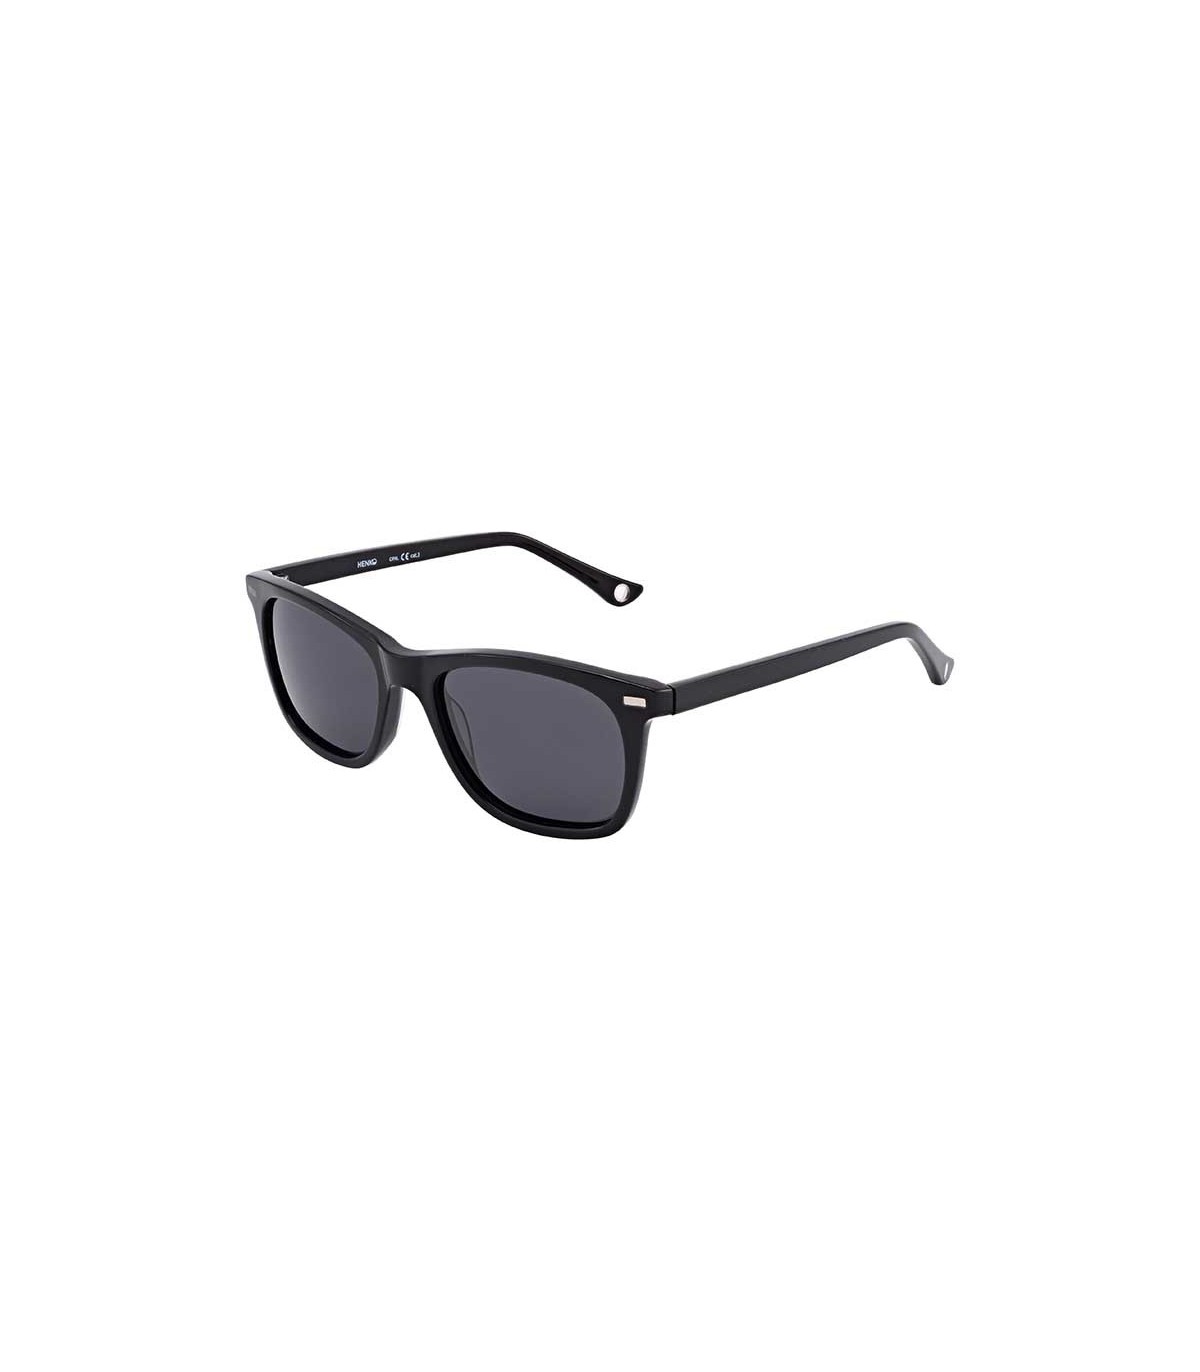 Henko Sunglasses (prescription optional) POAS130